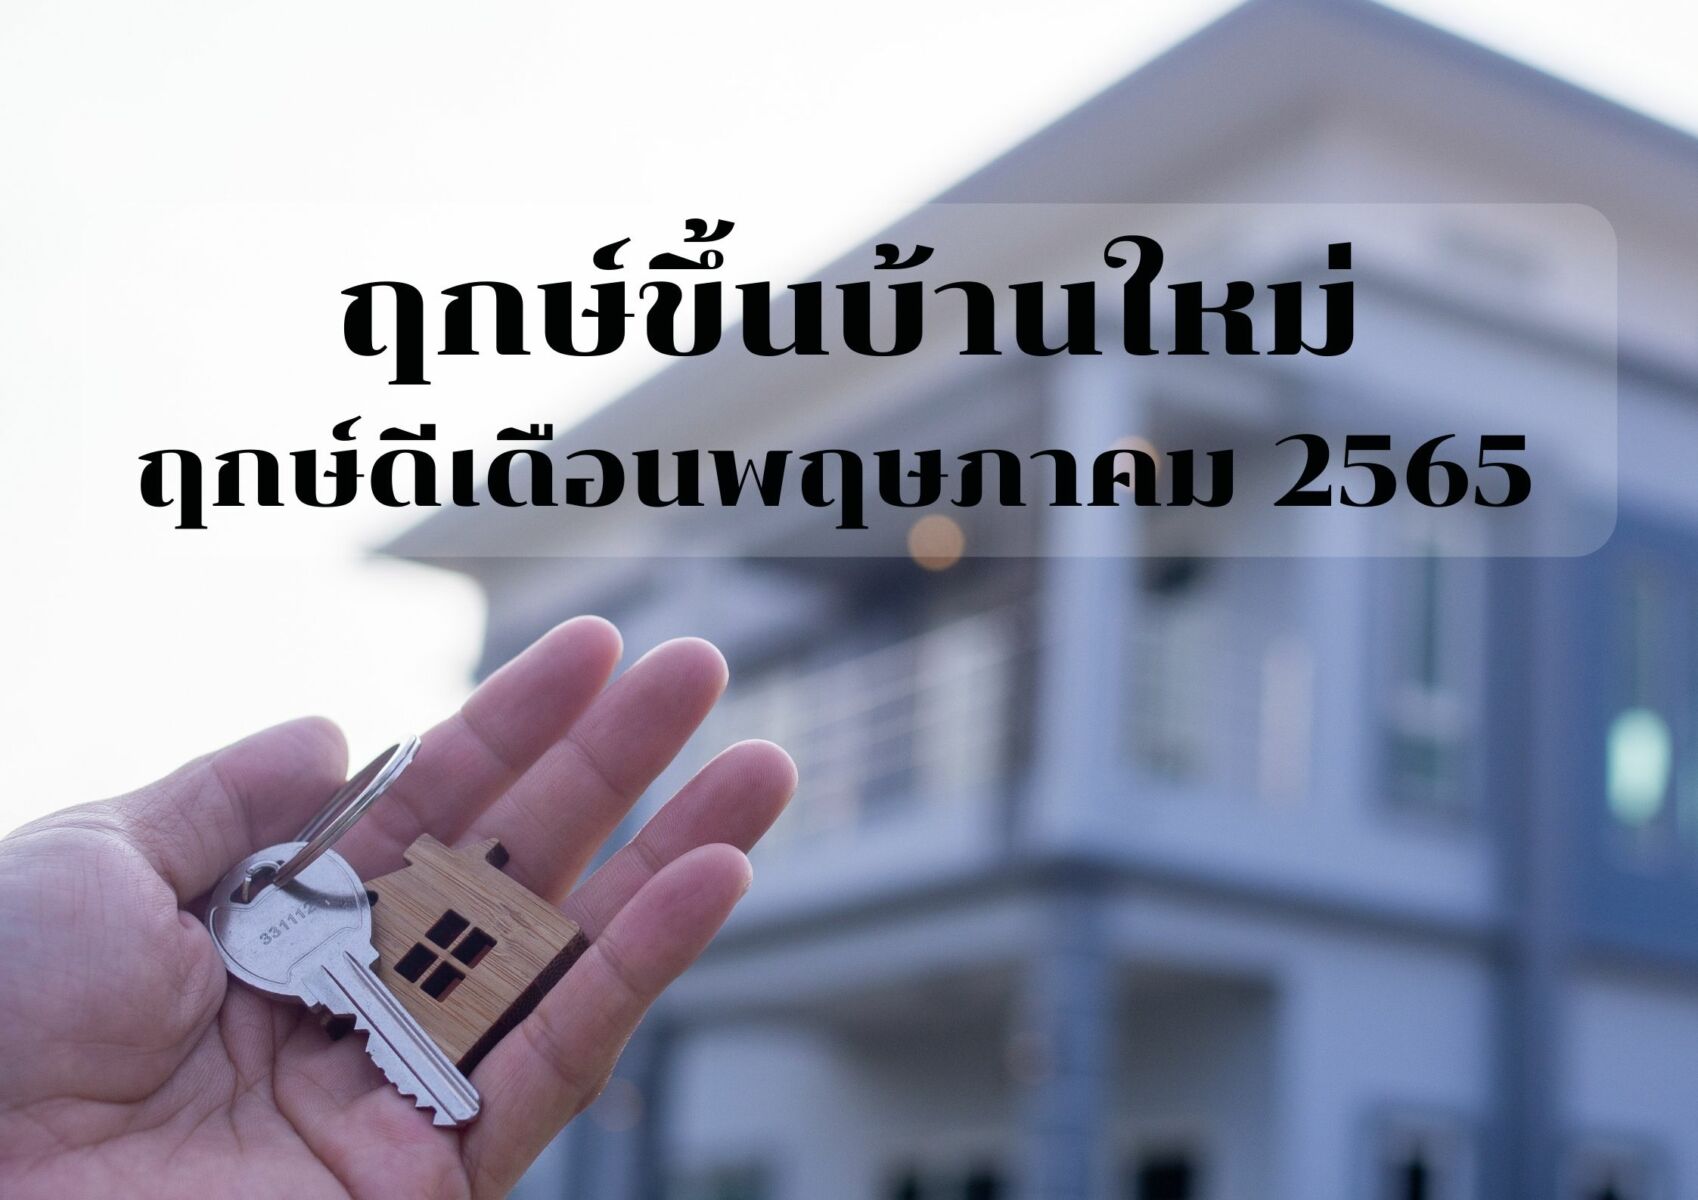 ฤกษ์ดีเดือนพฤษภาคม 2565 ขึ้นบ้านใหม่ ย้ายตรงวันดี ชีวิตในบ้านเป็นสุข |  Thaiger ข่าวไทย